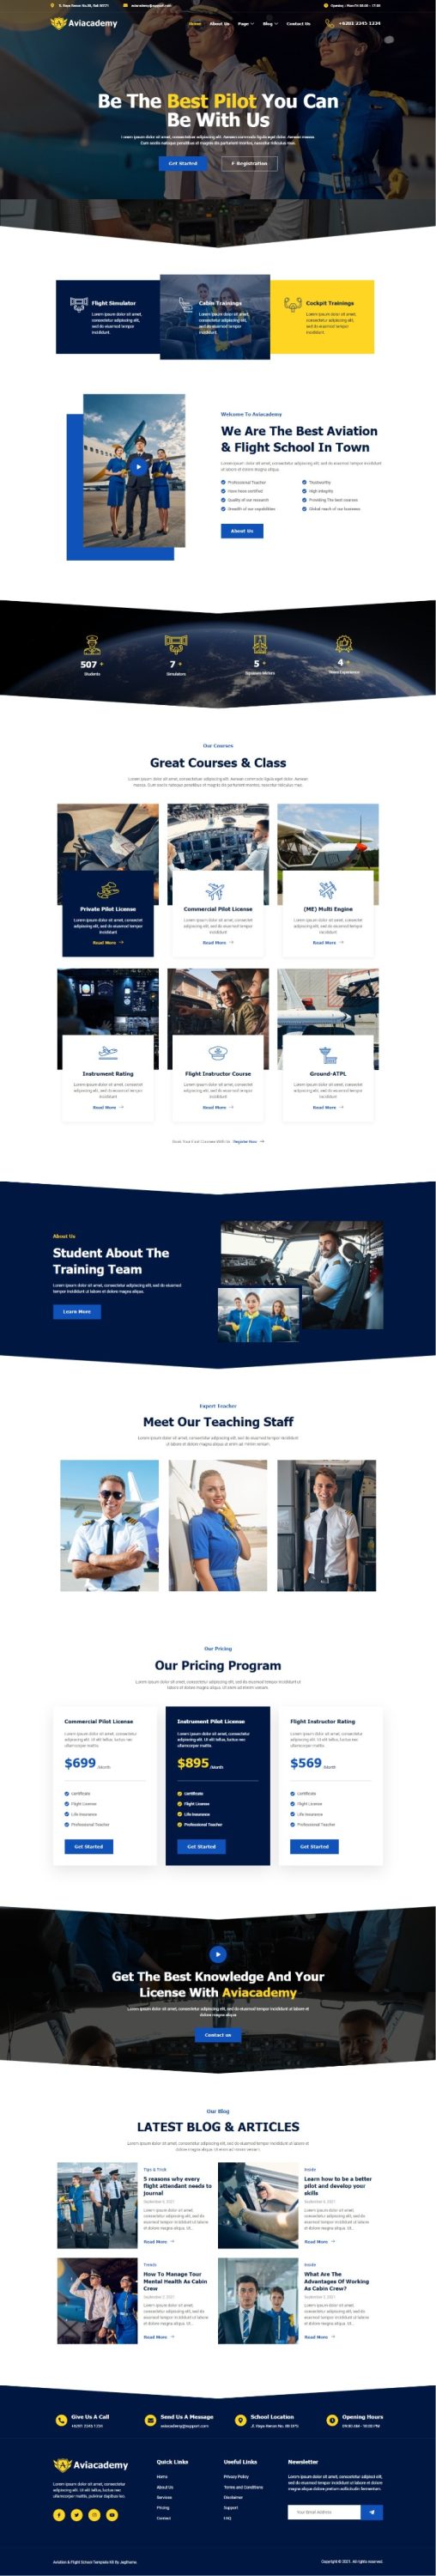 Mẫu website giới thiệu công ty - Aviacademy